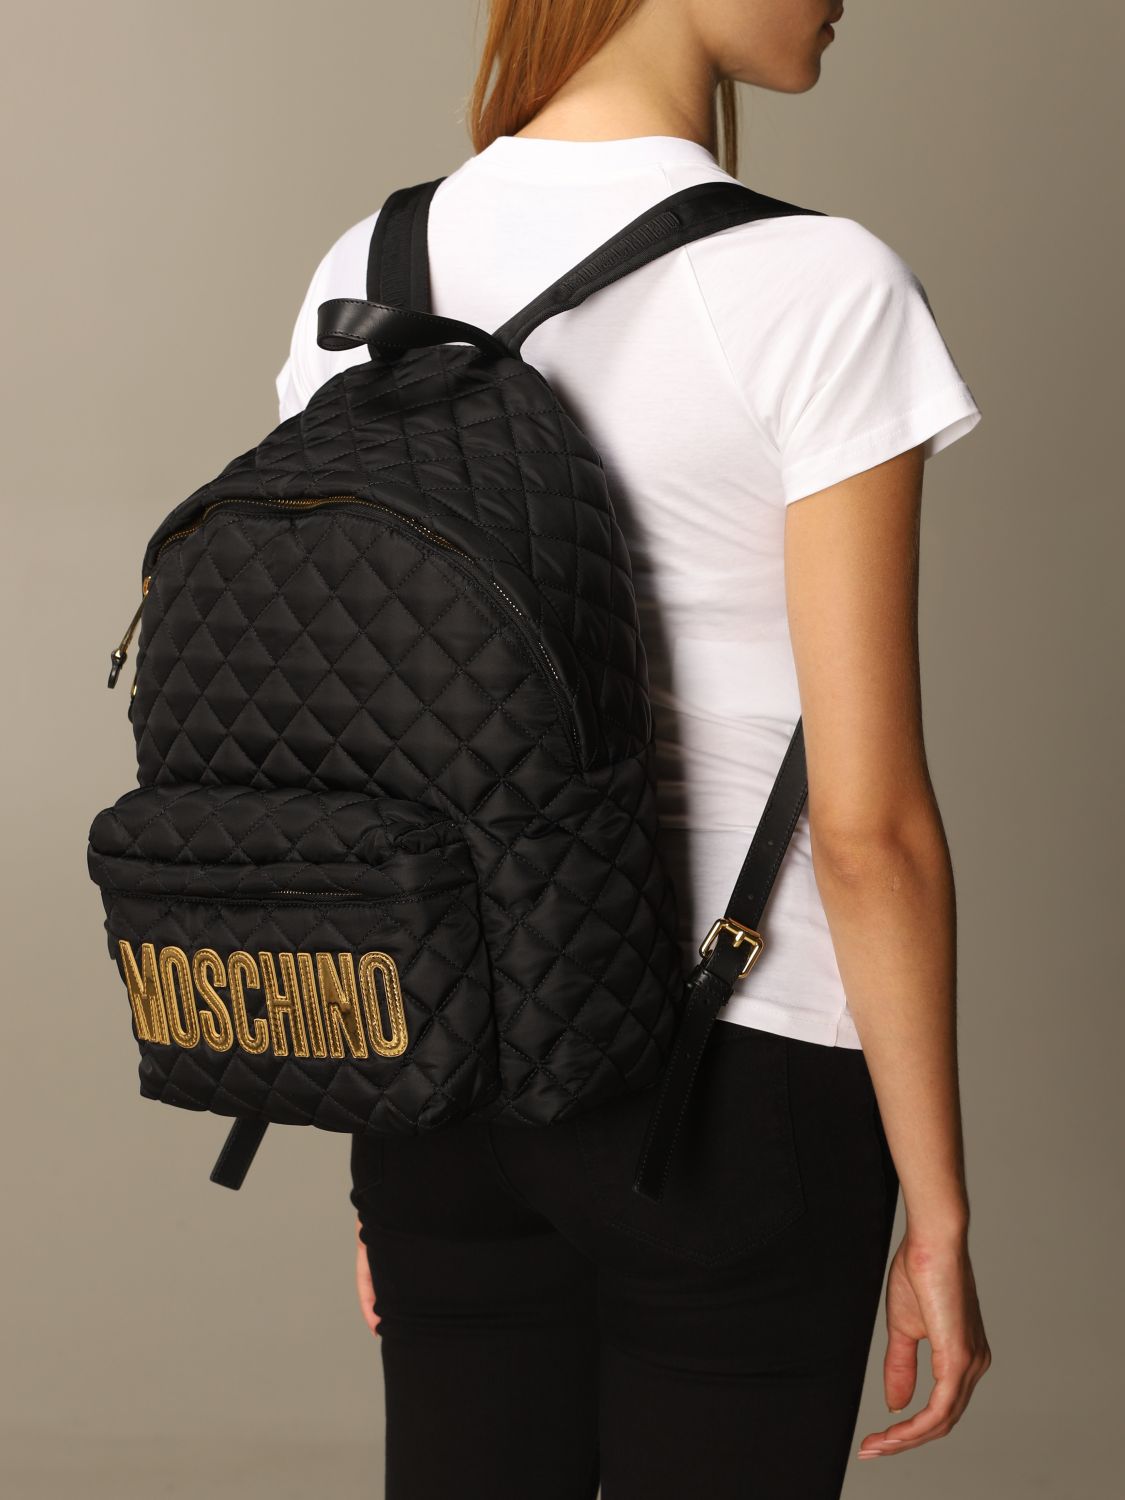 moschino nylon backpack